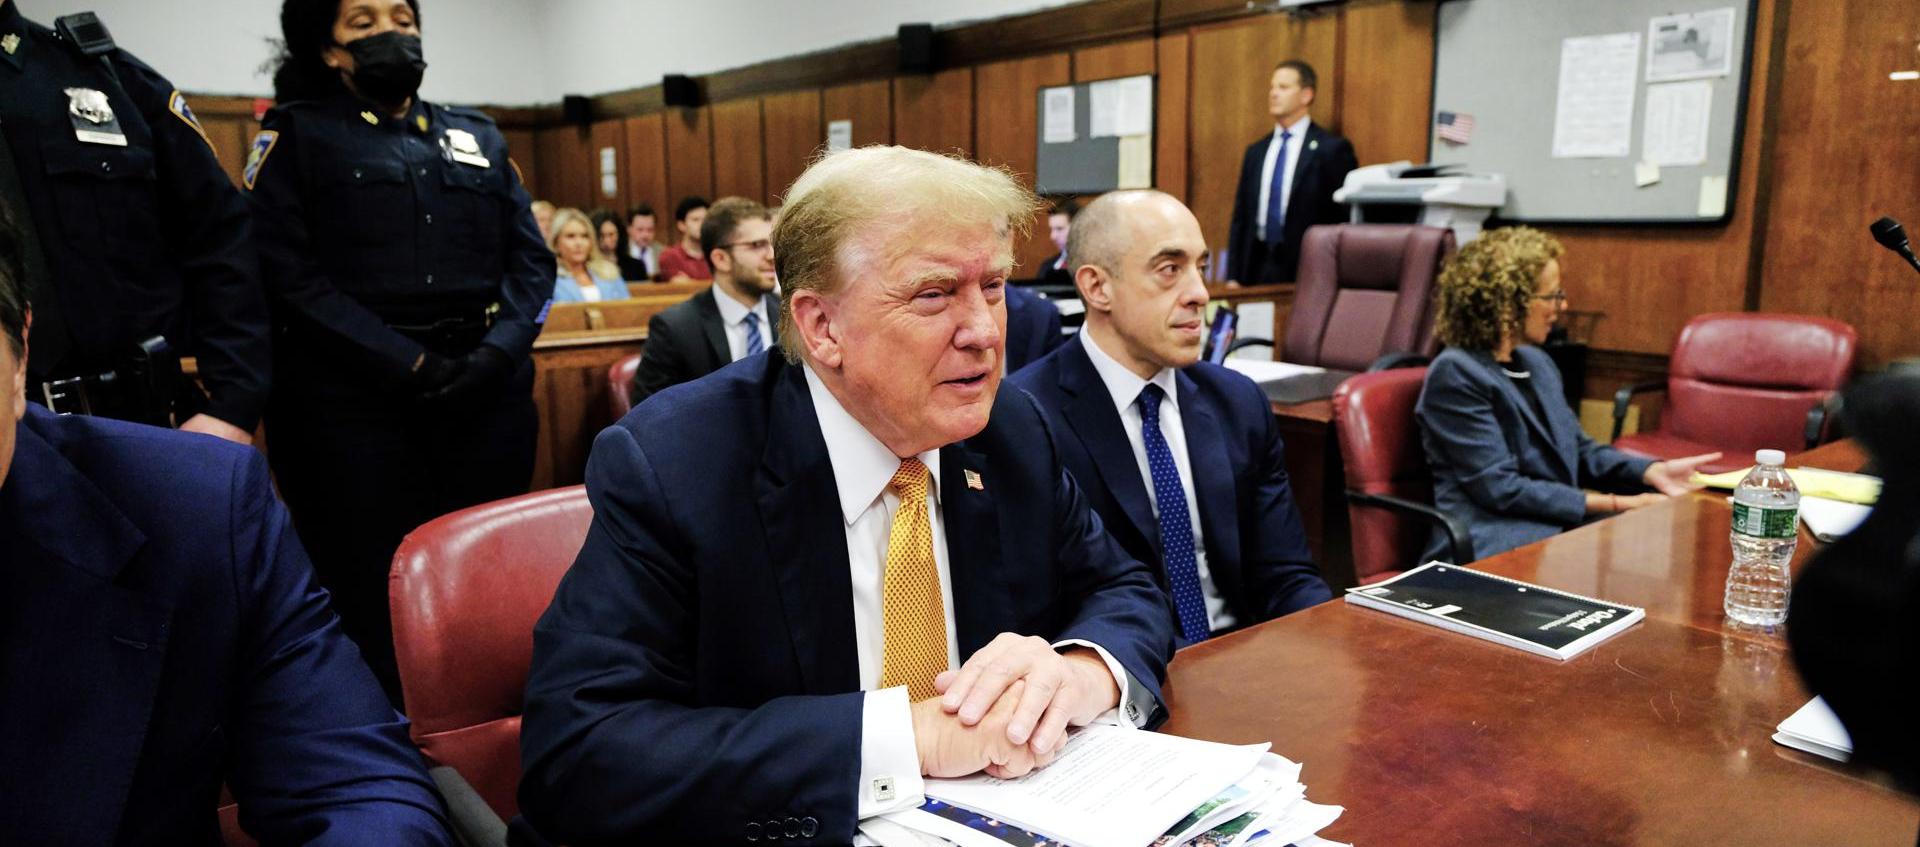 El expresidente Donald Trump en su juicio penal en la Corte Suprema del Estado de Nueva York.